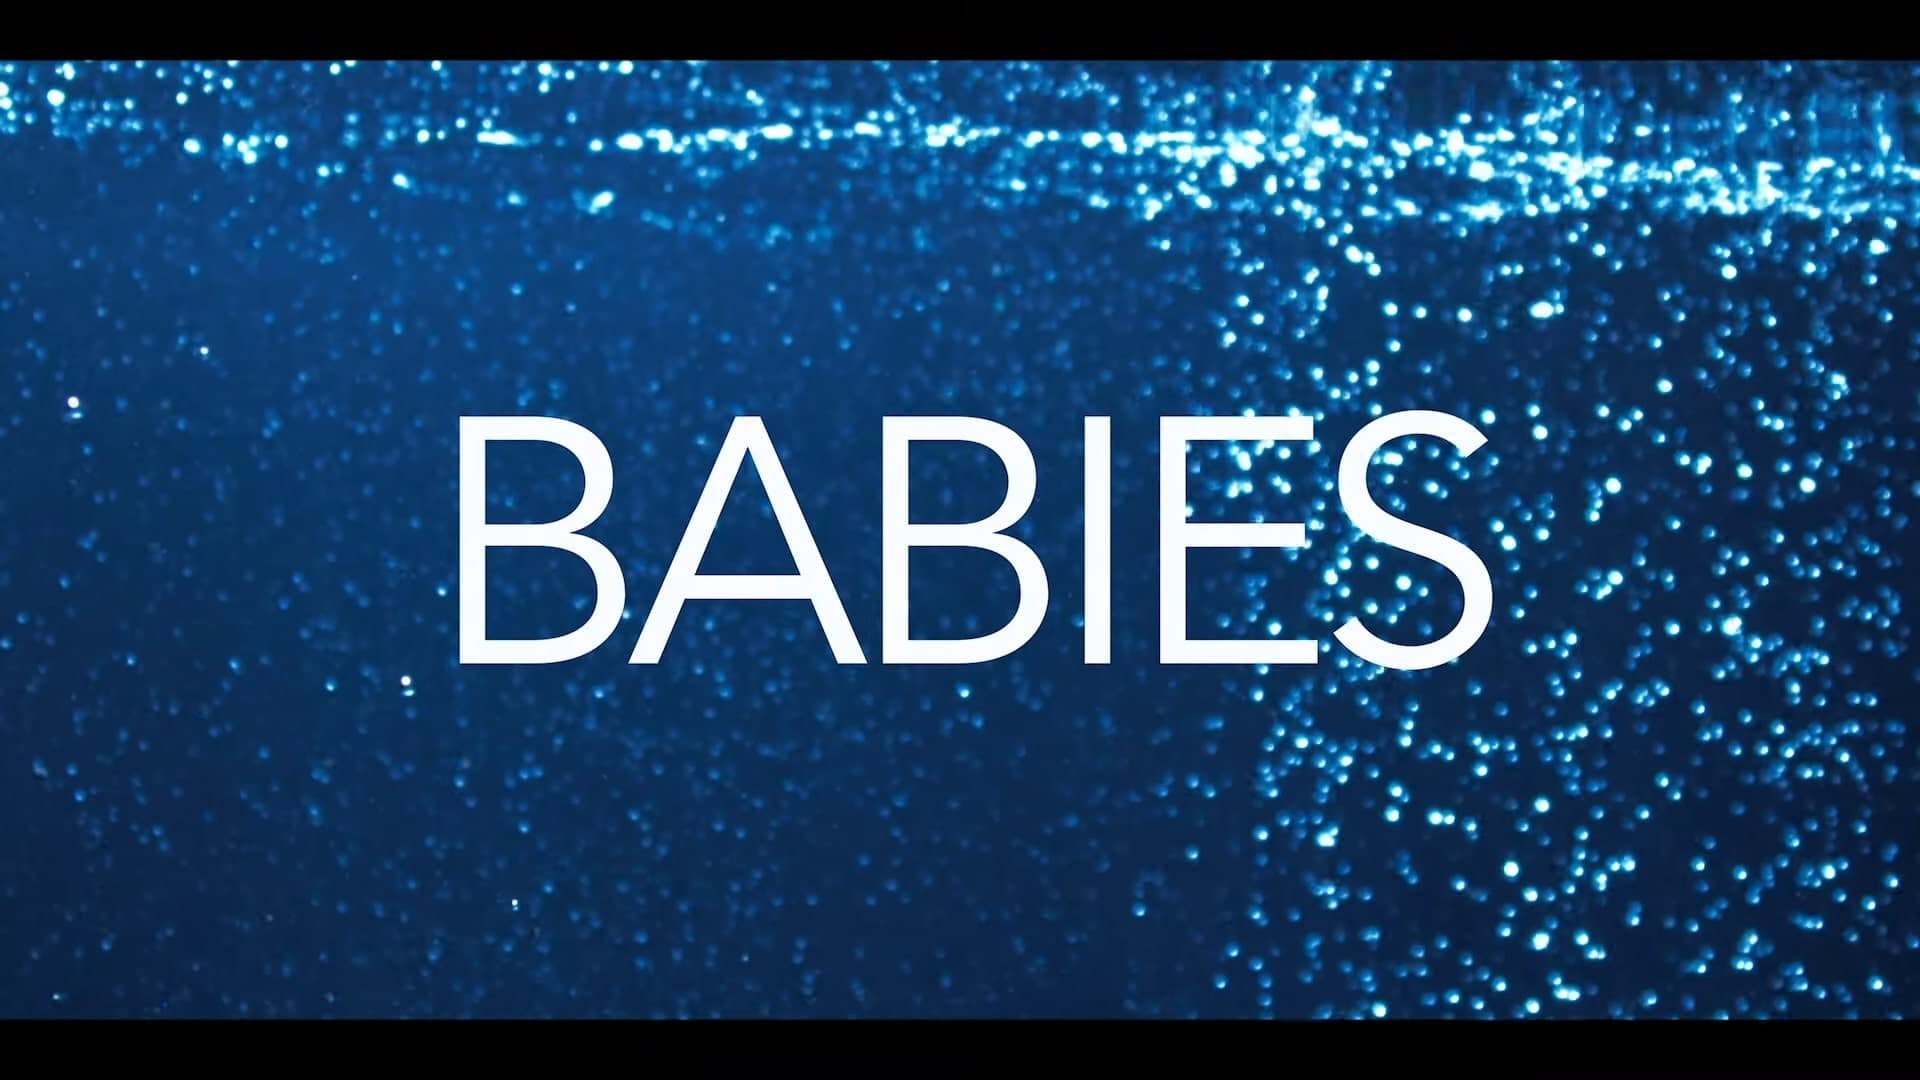 BABIES Netflix Trailer, Best Netflix Documentaries, Netflix Family Entertainment, Netflix Docuseries, Coming to Netflix in February 2020